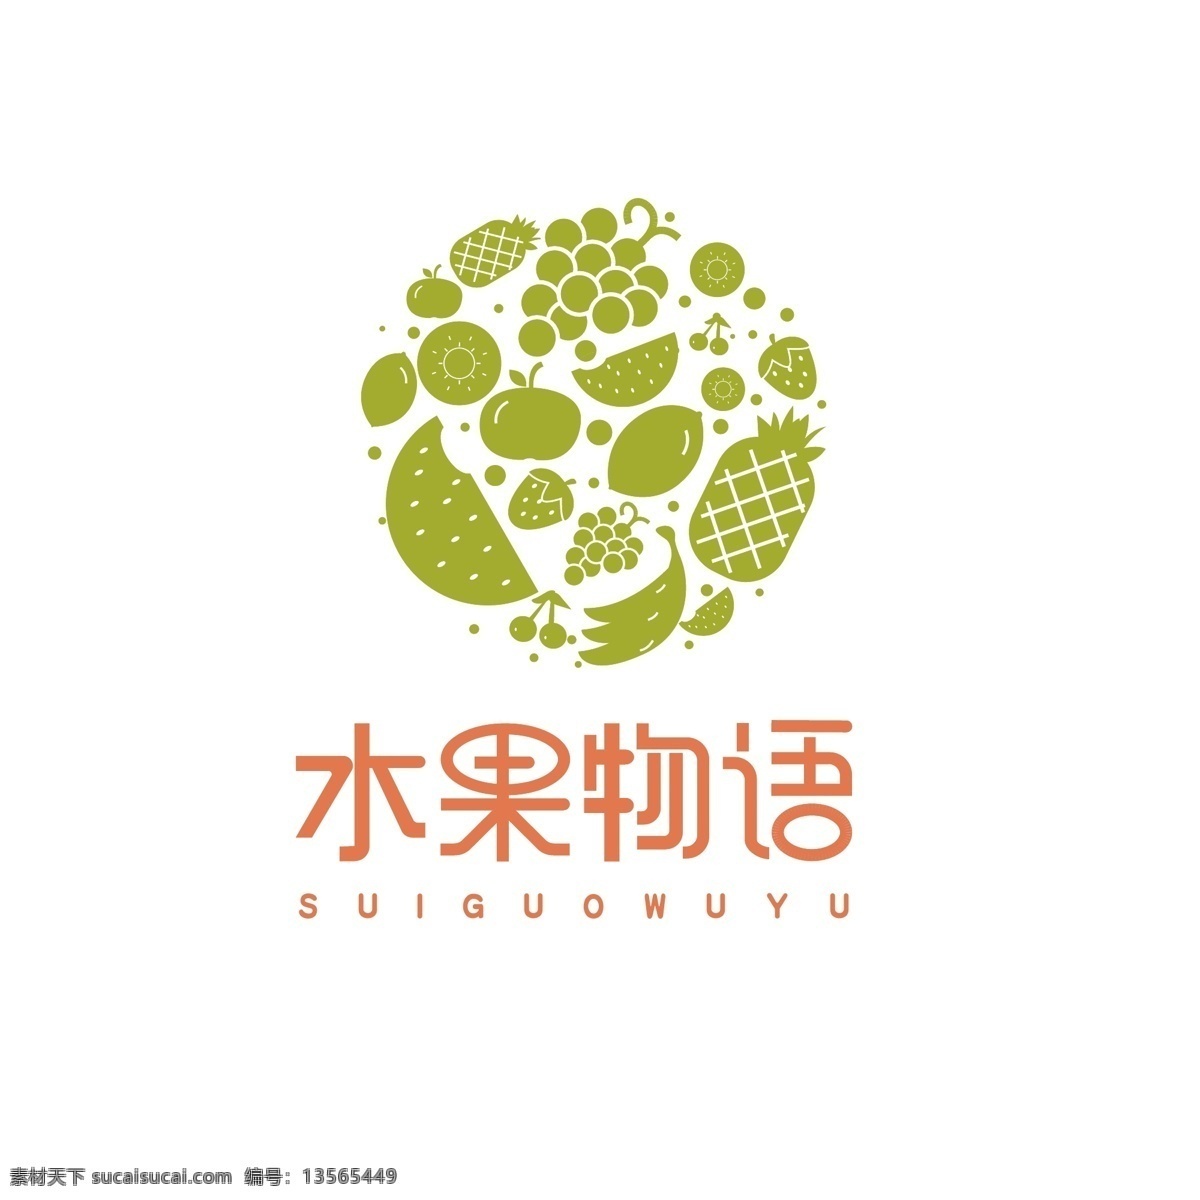 水果物语 logo 水果 多元素组合 原创 共享 标志图标 企业 标志